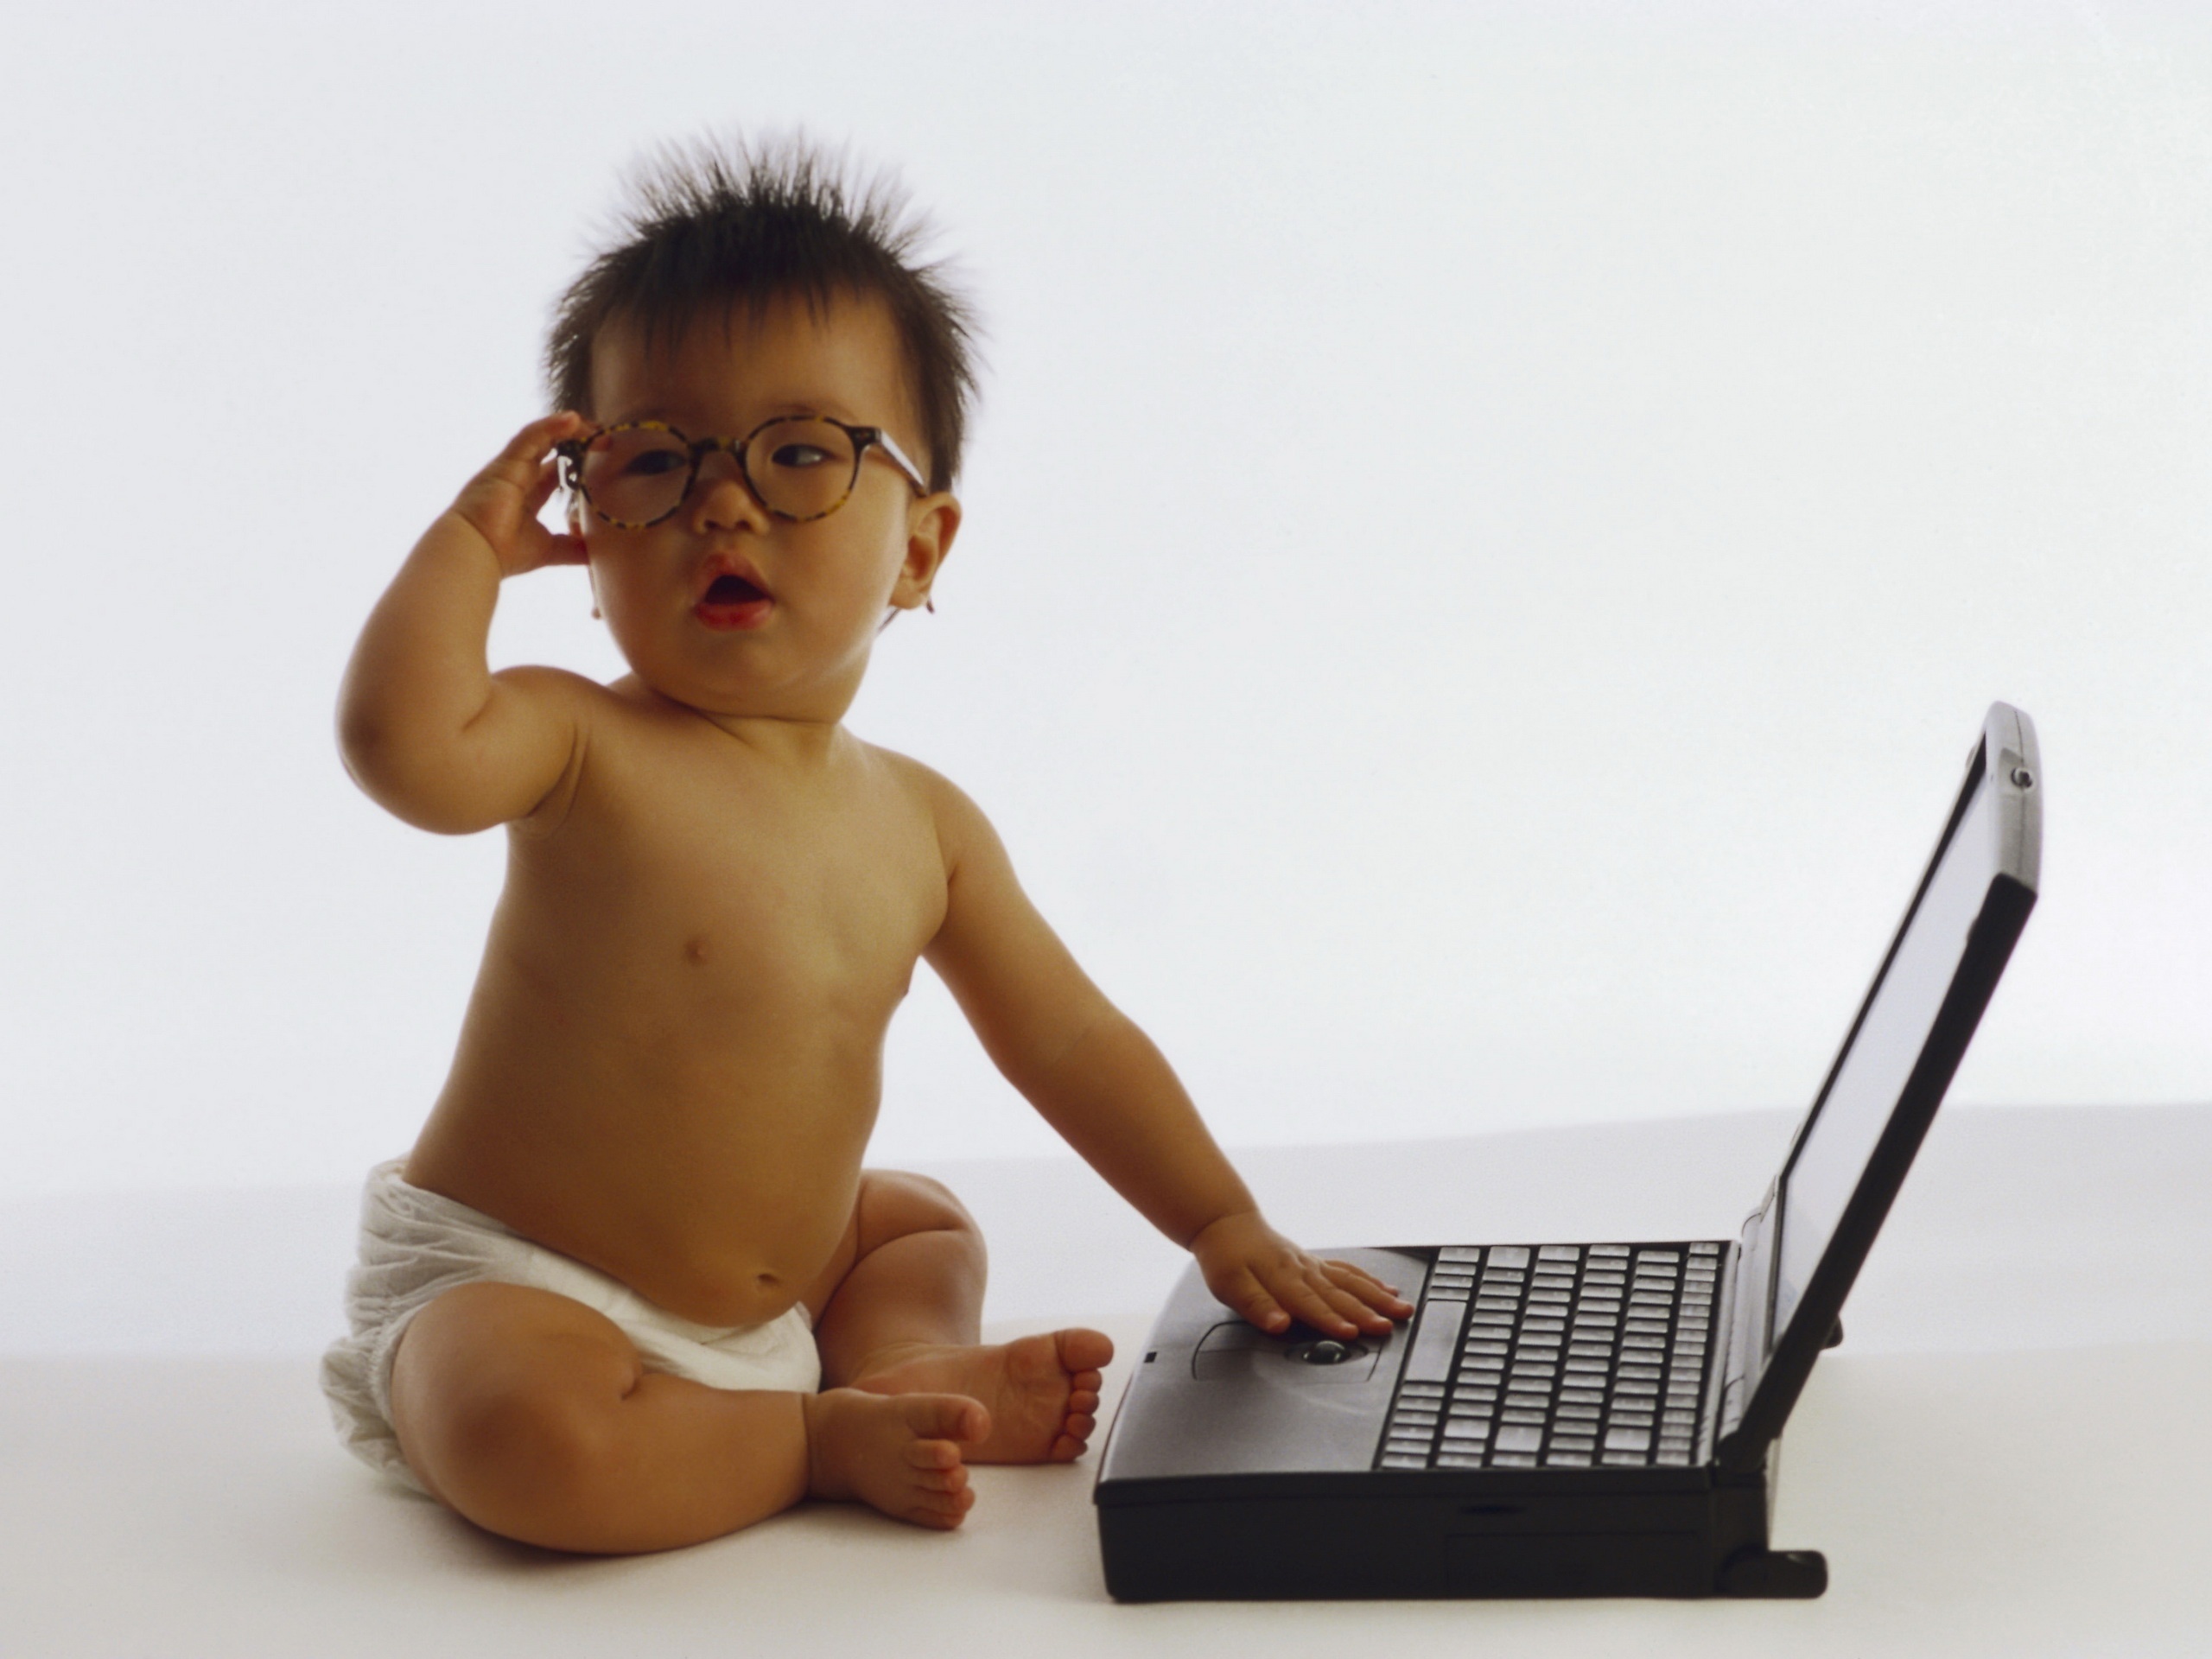 Смешная картинка компьютера. Компьютер картинка для детей. Маленький ребенок за компьютером. Компьютер интернет дети. Мальчик с ноутбуком.